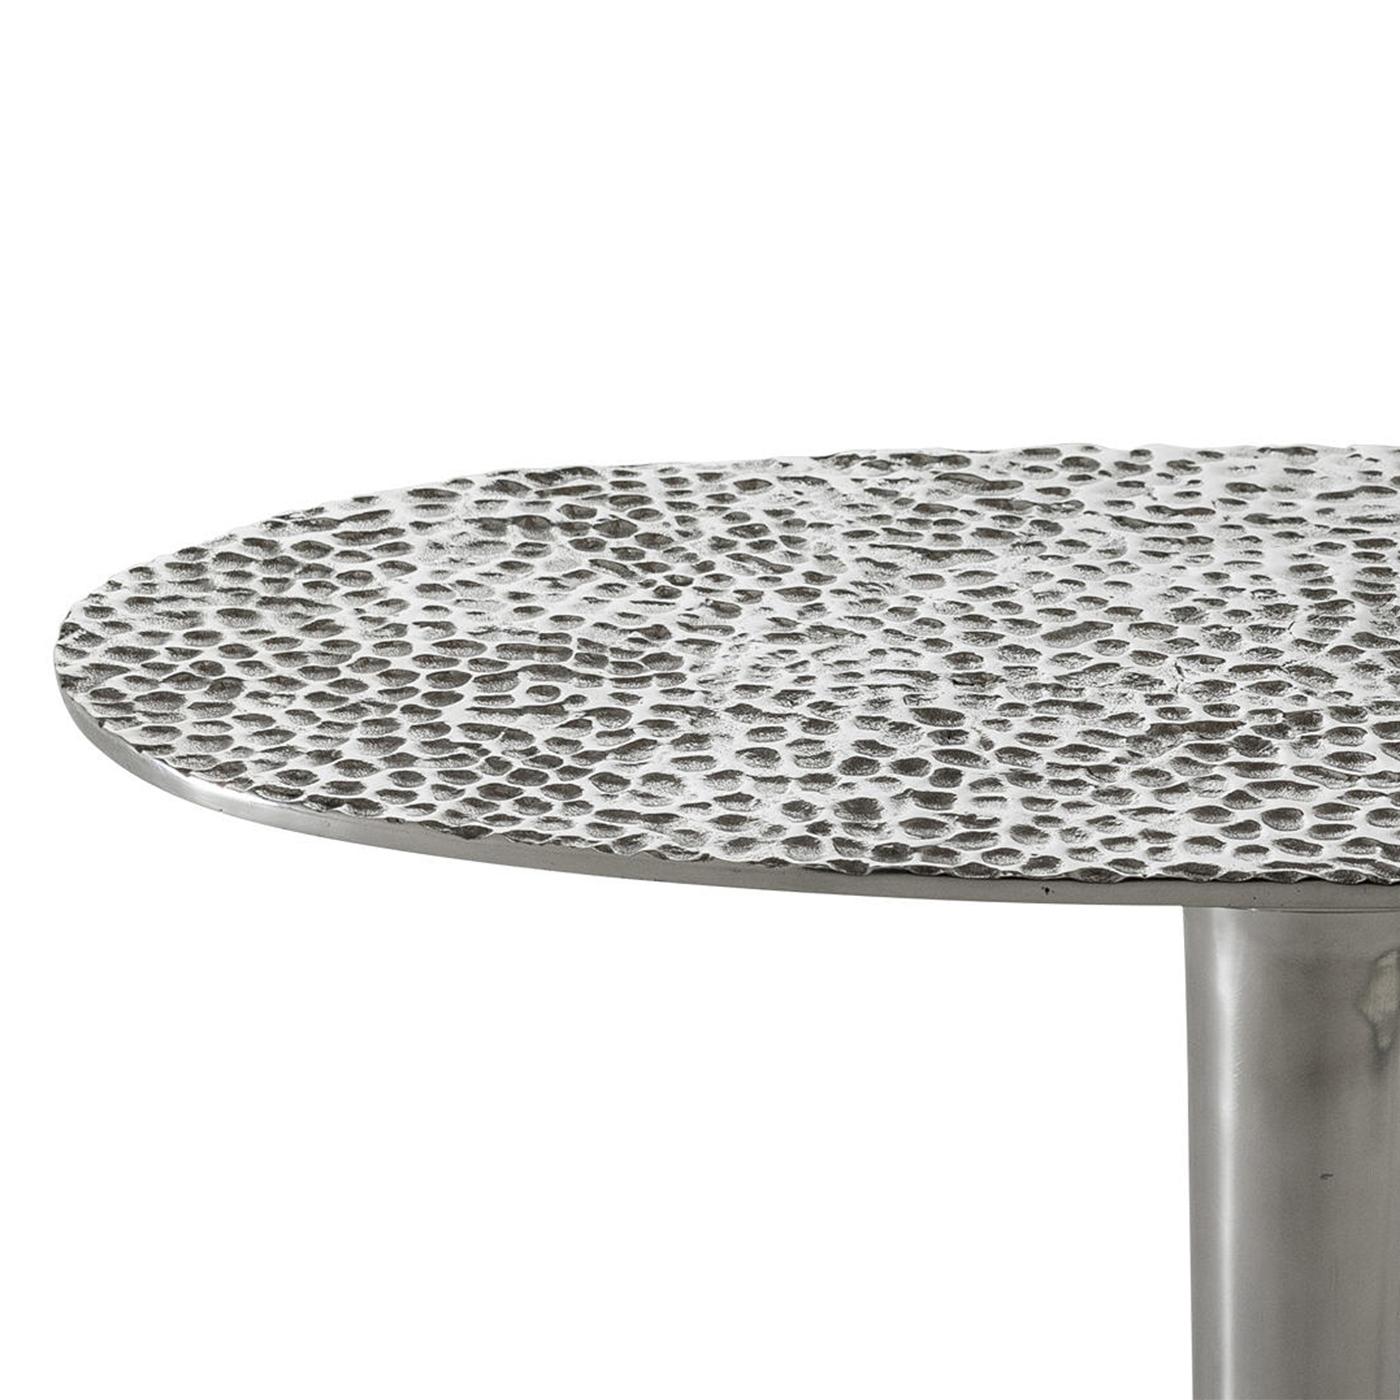 Table d'appoint Alu drops en fonte polie
aluminium. Aluminium martelé à la main.